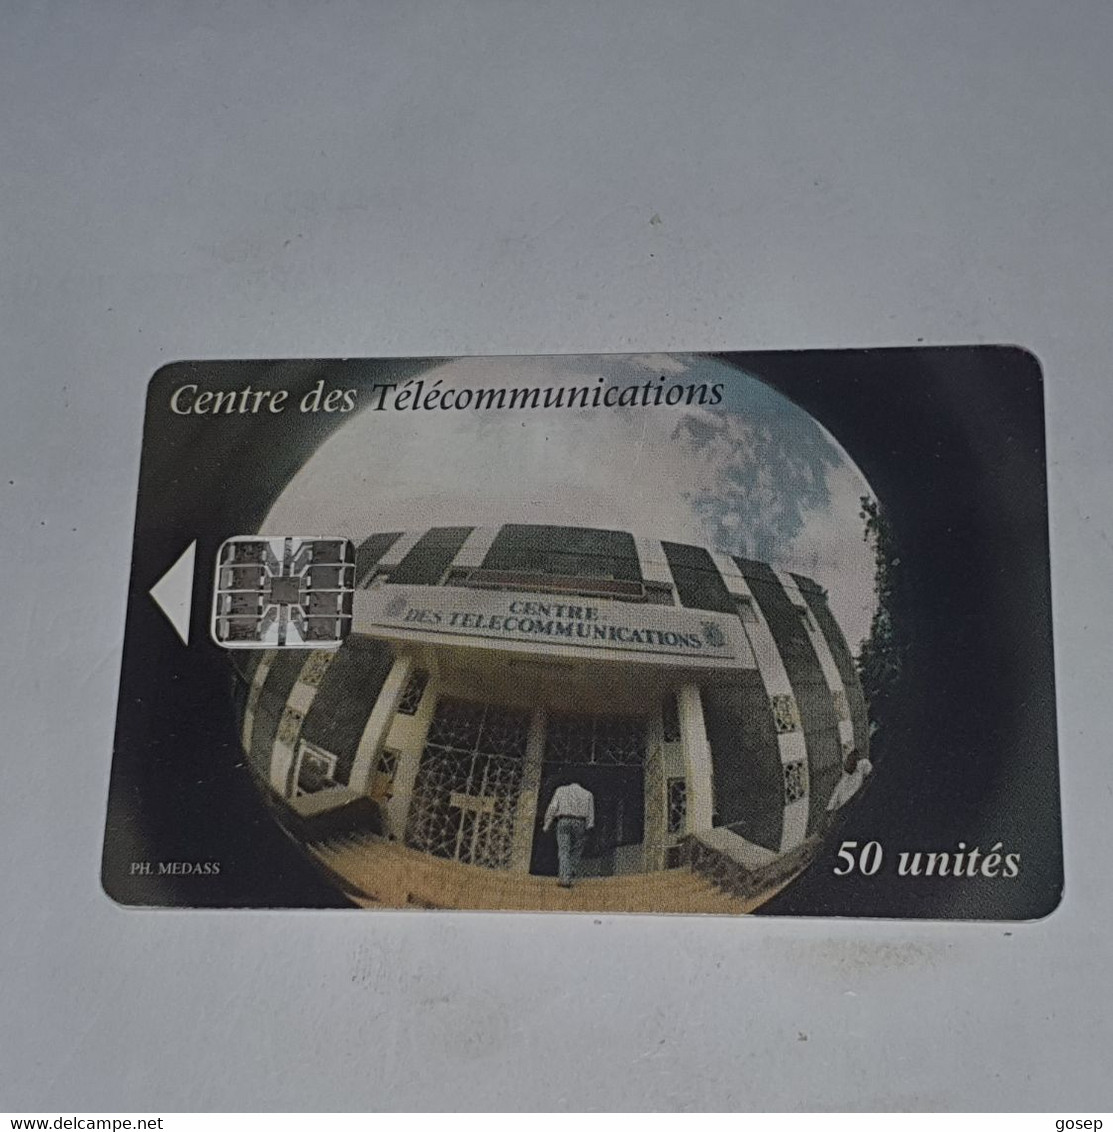 Comores-(KM-OPT-0016B)-telecom Centre-(7)-(50units)-(00836591)-used Card+1card Prepiad/gift Free - Comoros